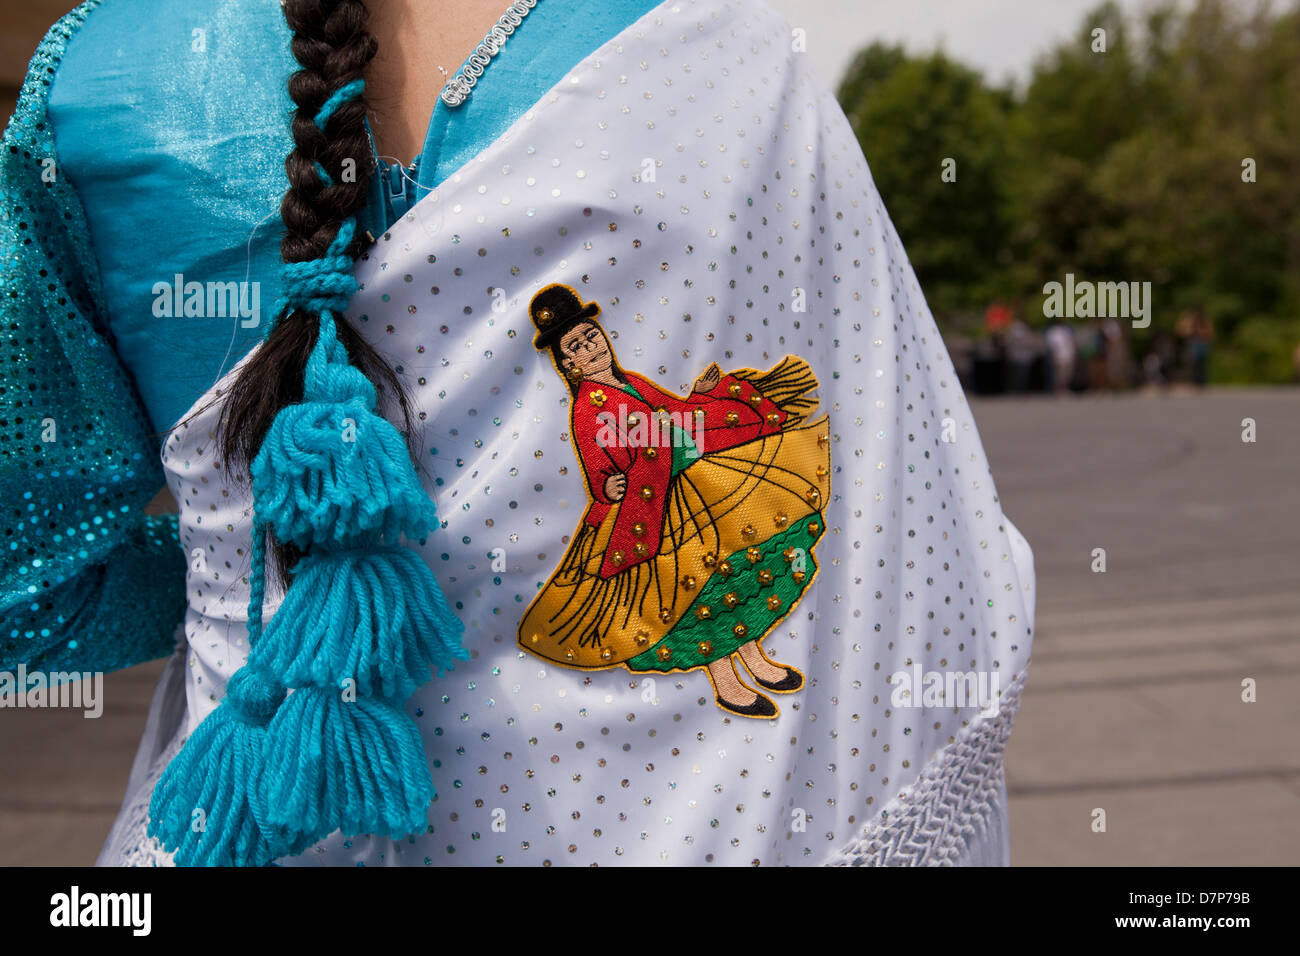 Abito boliviano immagini e fotografie stock ad alta risoluzione - Alamy